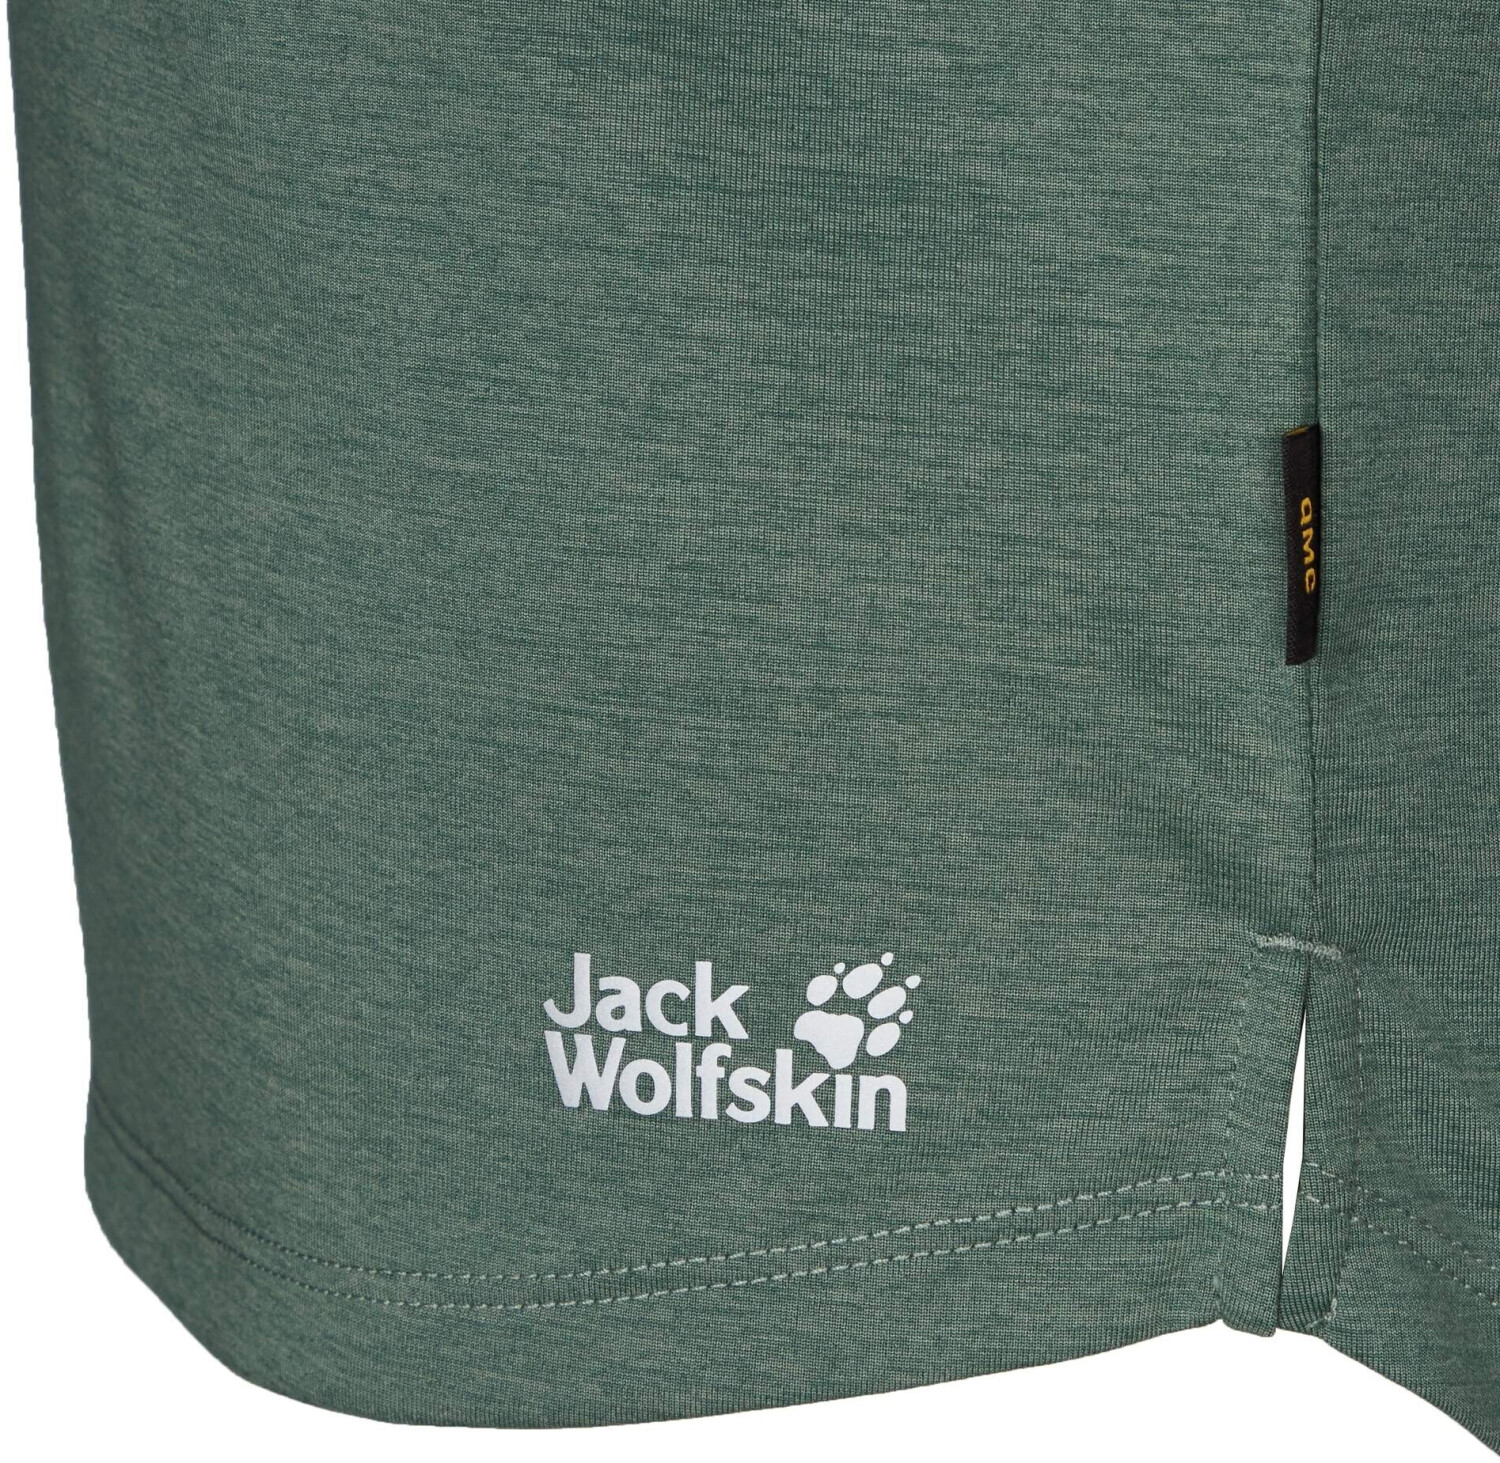 Jack Wolfskin € W 26,00 & hedge (1806654) T Preisvergleich Go 3/4 bei ab | Pack green